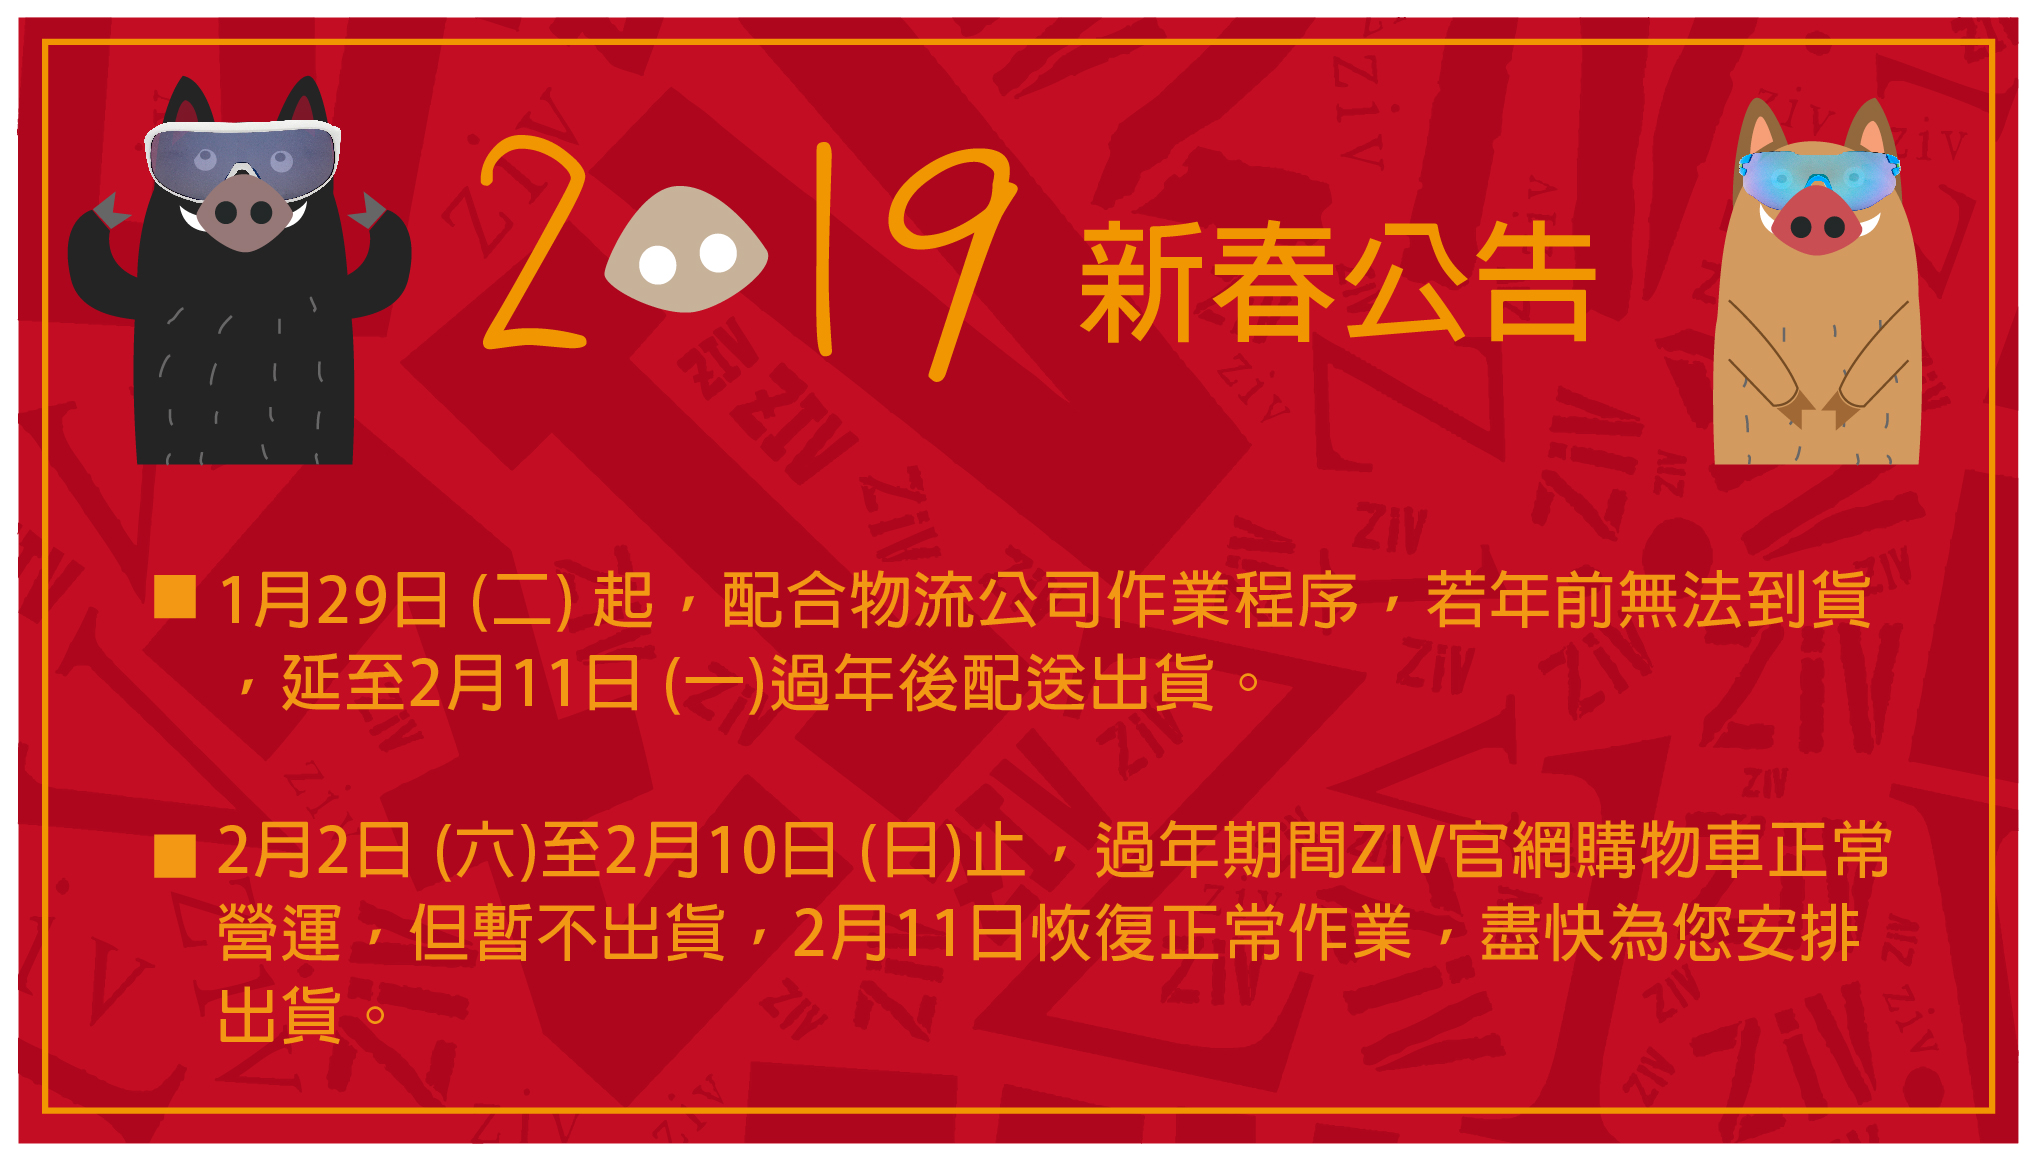 CNY,happy Chinese new year, ZIV, Sport sunglases,運動眼鏡, 太陽眼鏡, 墨鏡, 新年快樂